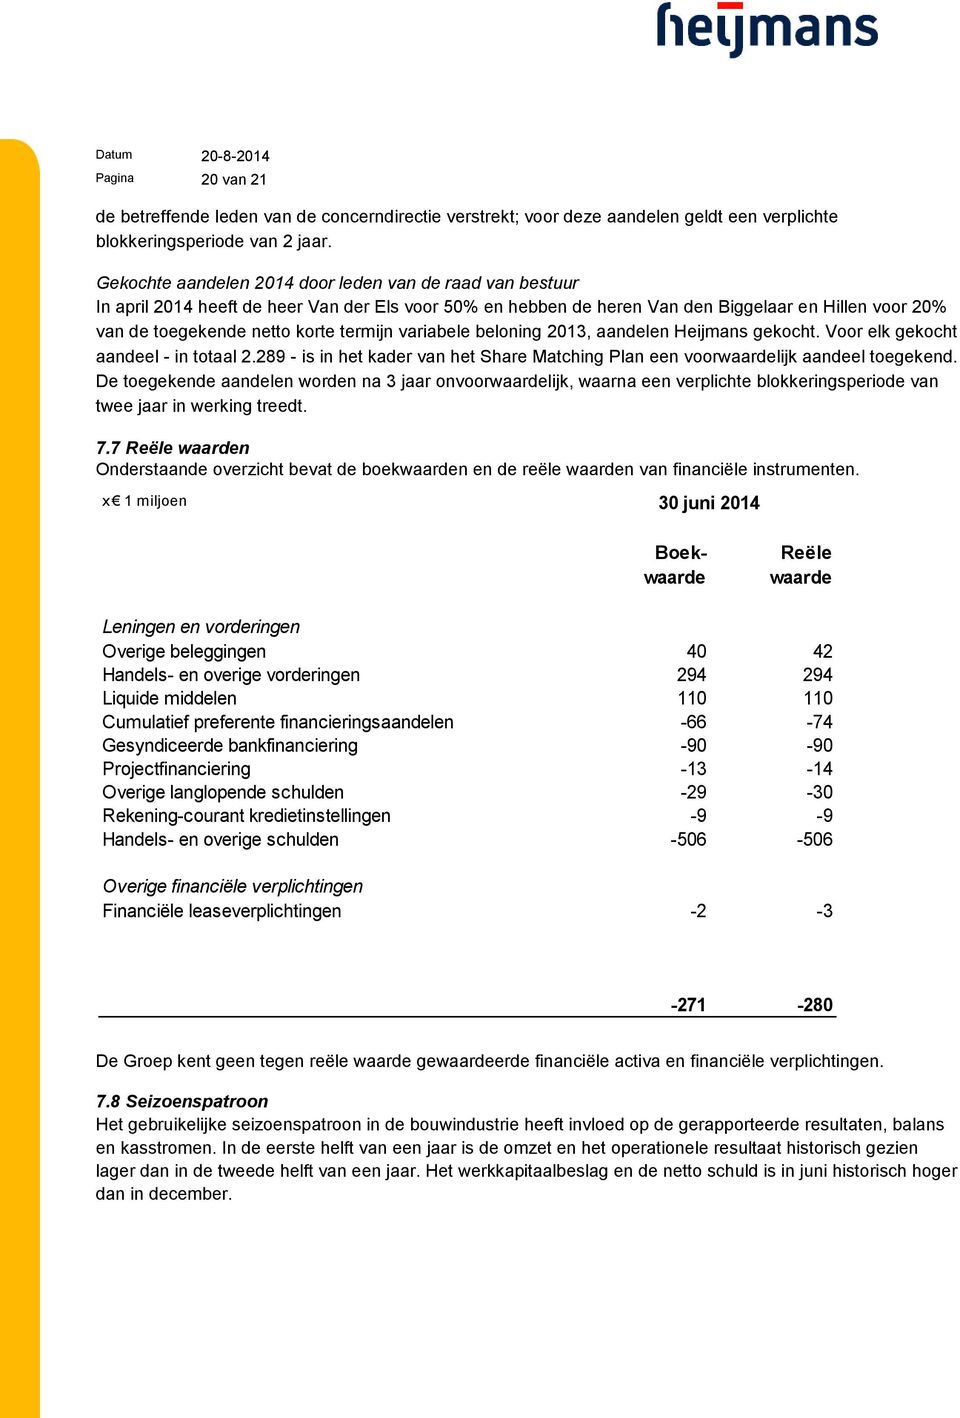 termijn variabele beloning 2013, aandelen Heijmans gekocht. Voor elk gekocht aandeel - in totaal 2.289 - is in het kader van het Share Matching Plan een voorwaardelijk aandeel toegekend.